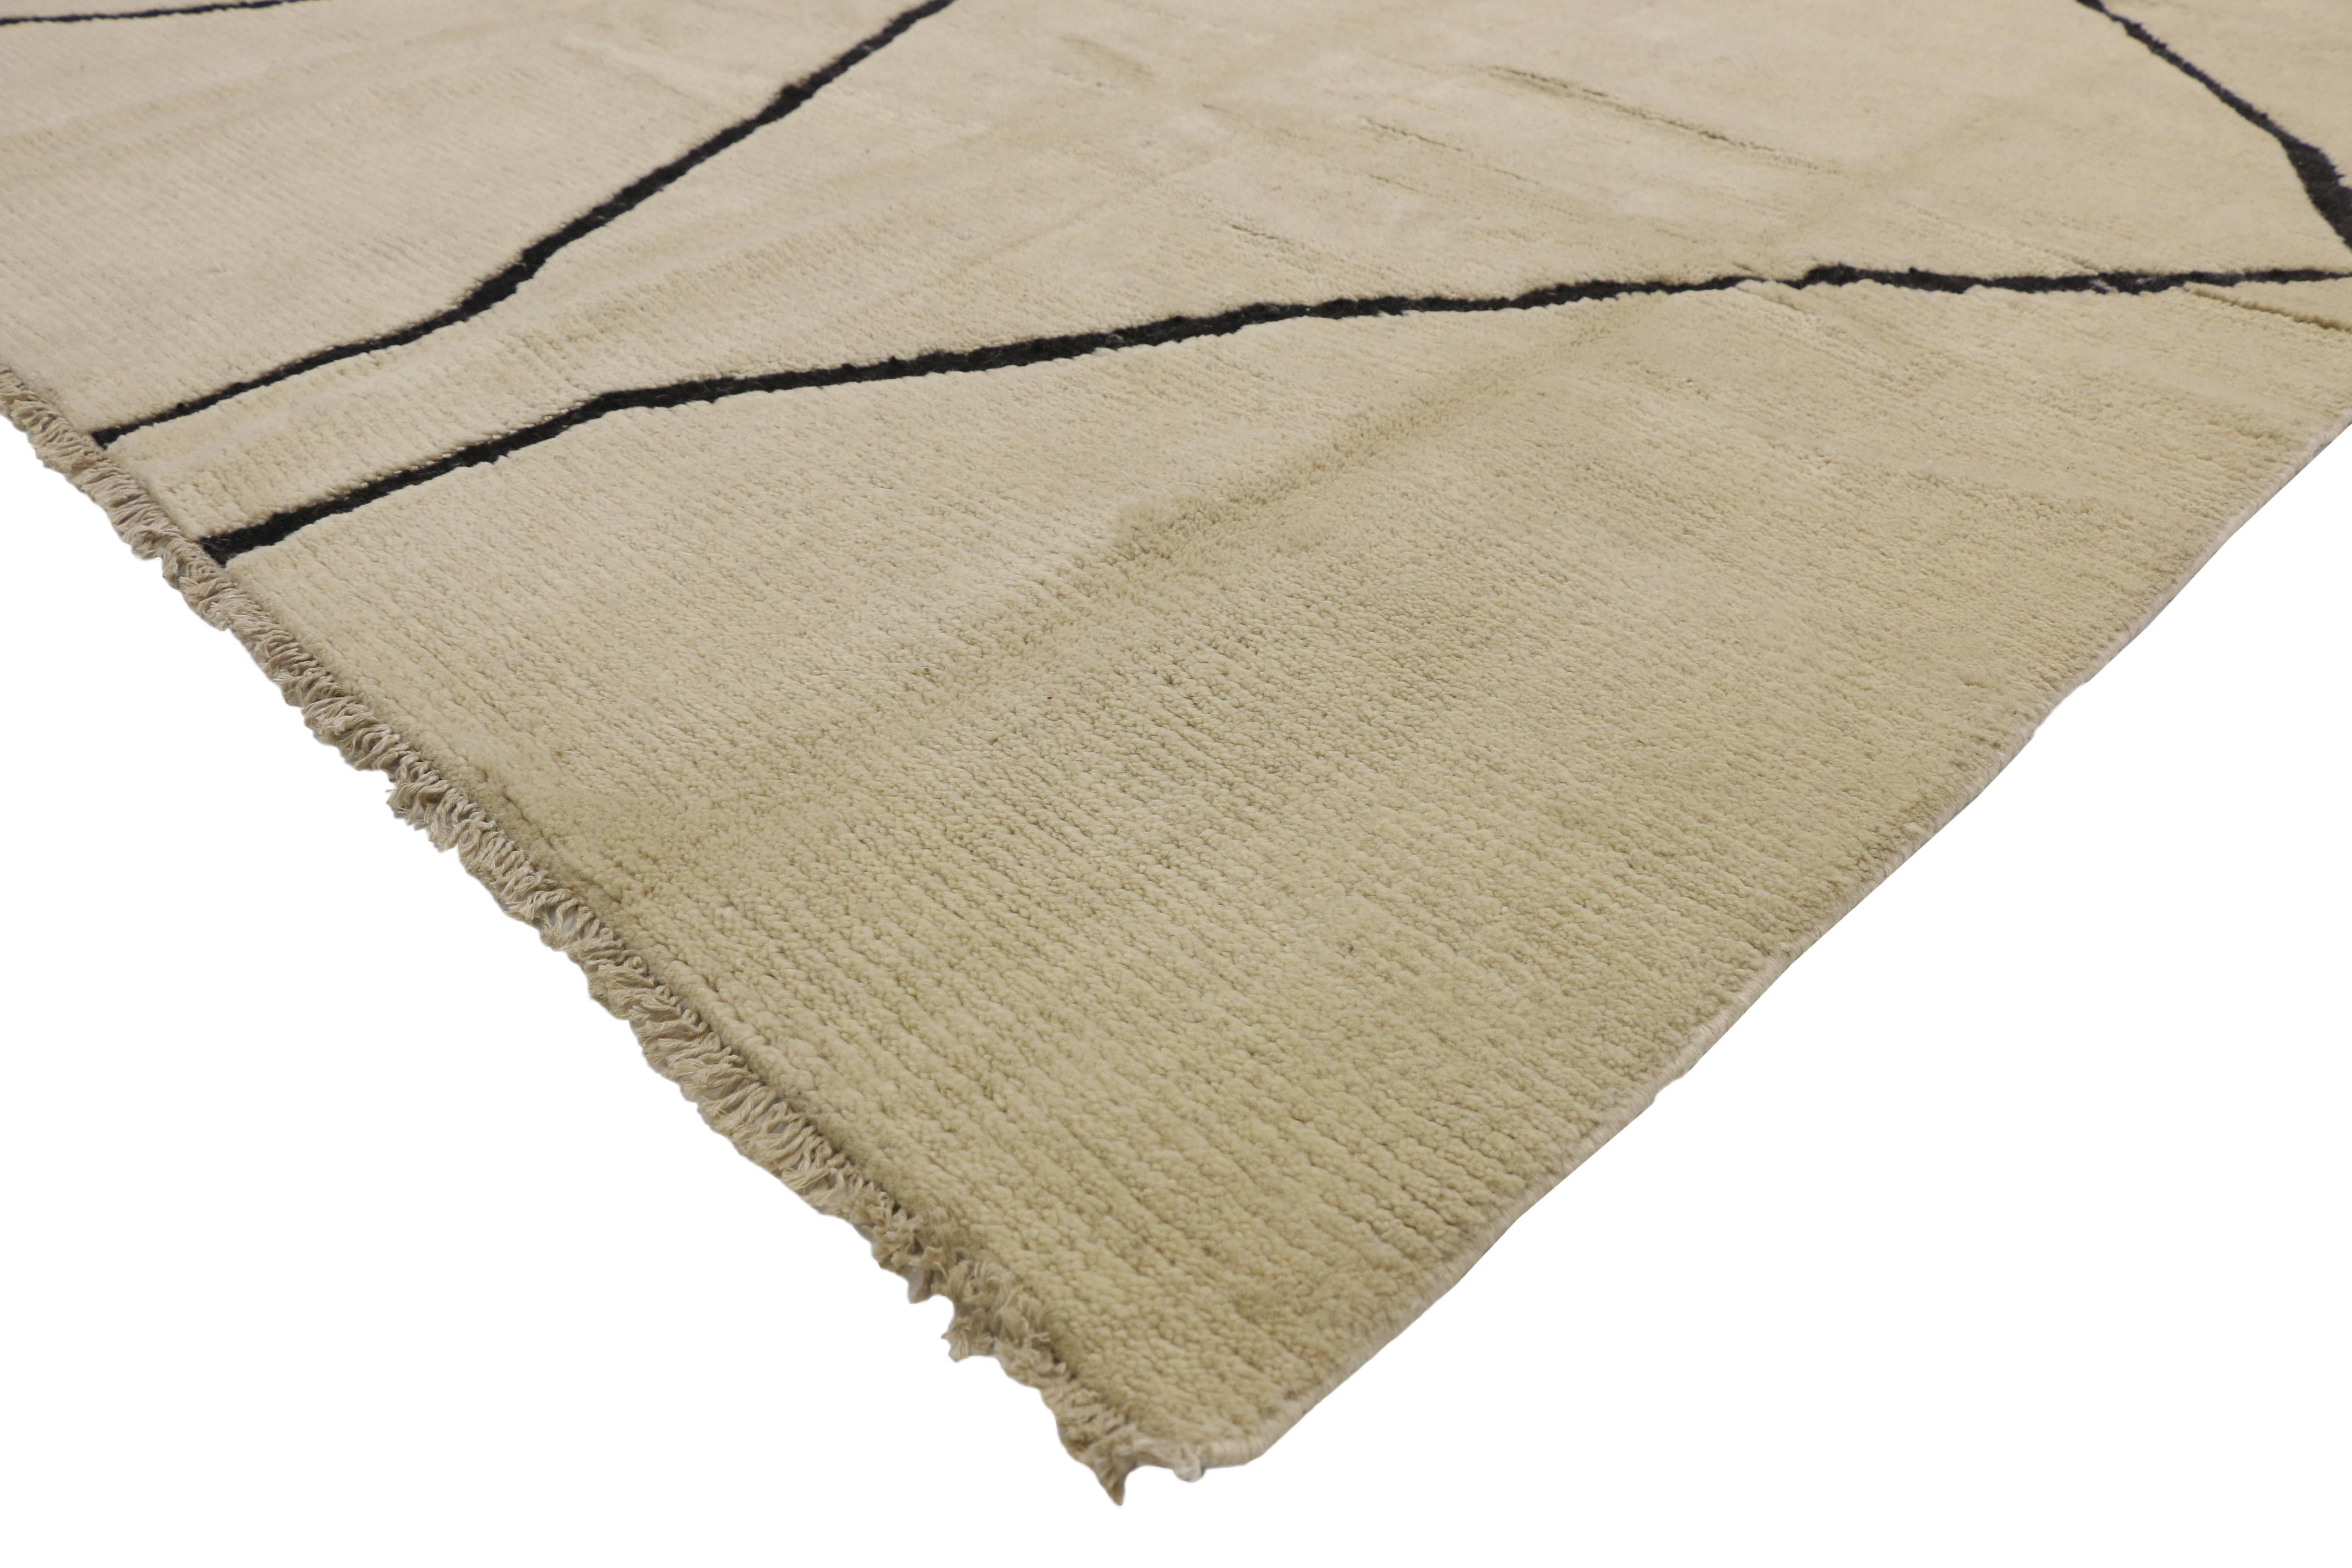 80507 Nouveau tapis marocain contemporain de style organique et moderne. Ce tapis marocain contemporain en laine nouée à la main présente deux colonnes de losanges en treillis qui se déploient sur les côtés d'un champ beige-crème abrasé. Les lignes